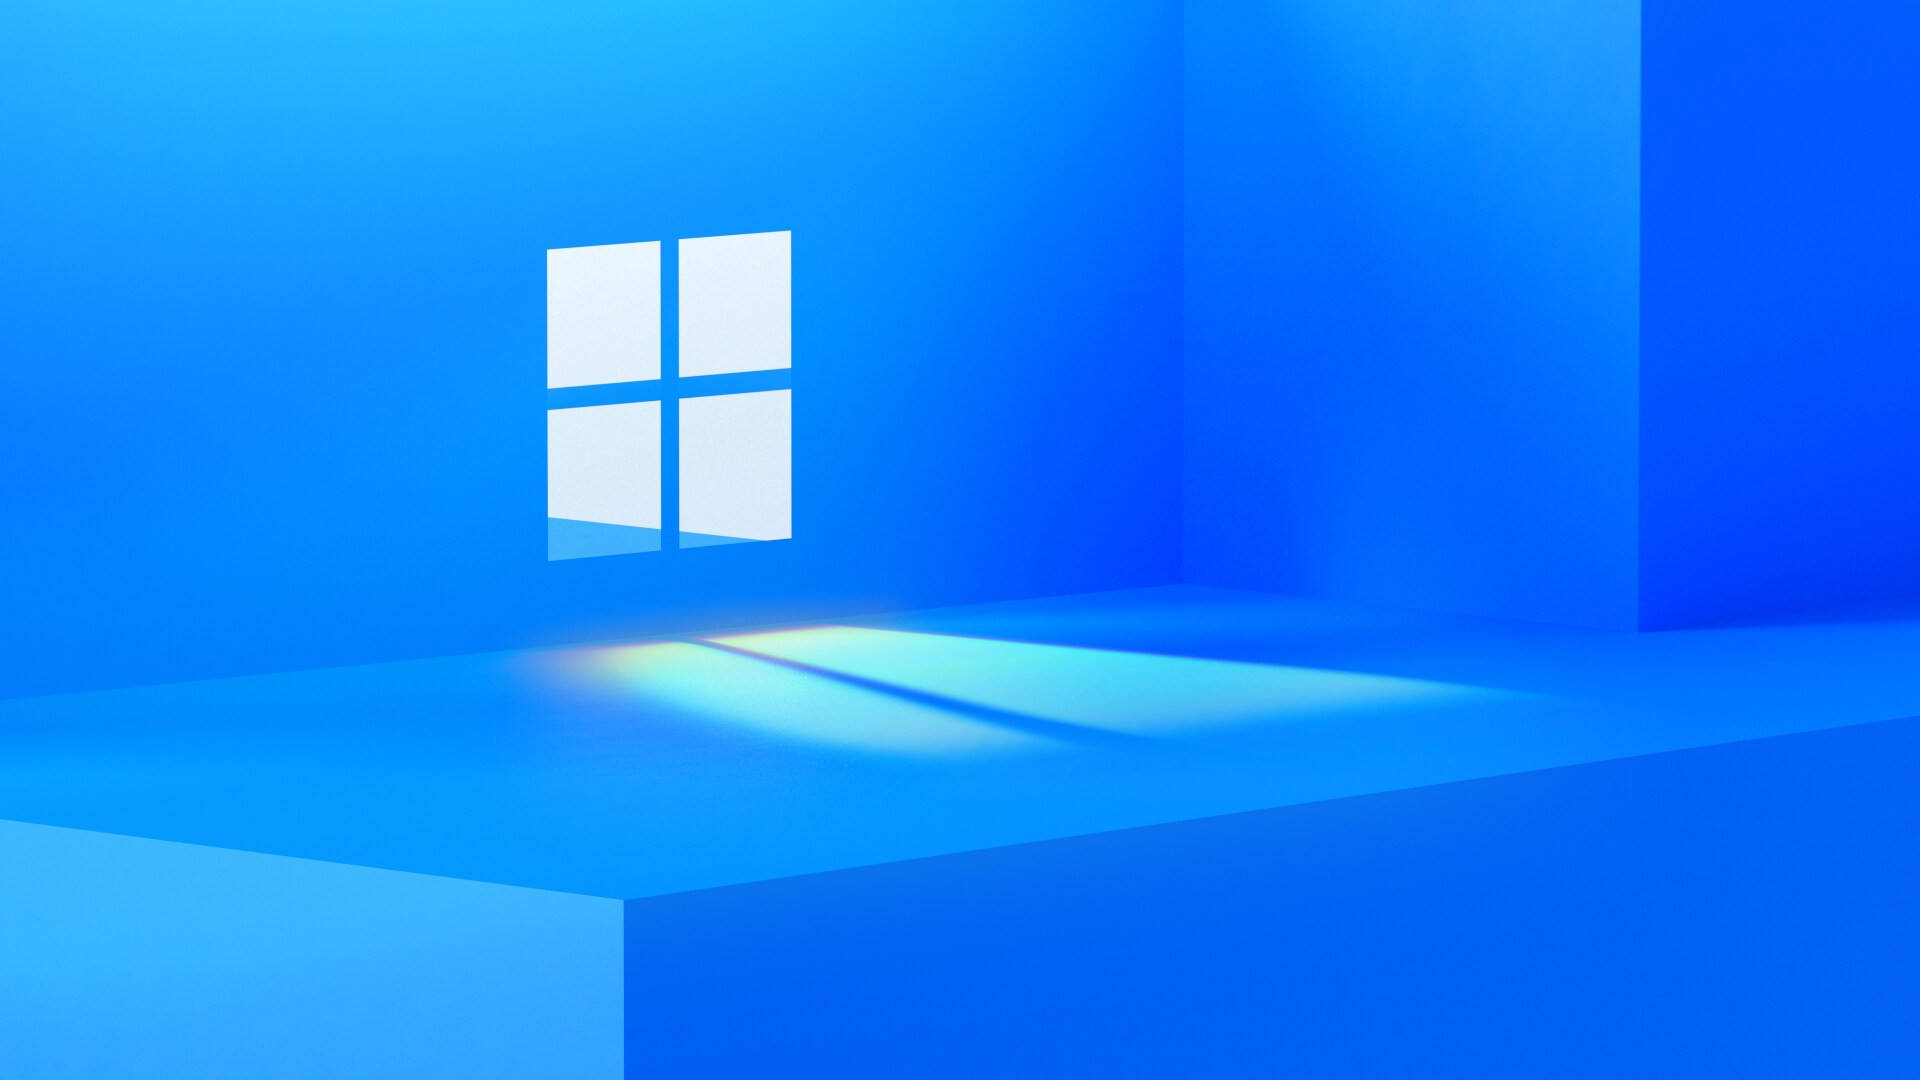 Bạn đang muốn thay đổi hình nền trên máy tính của mình? Hãy tải ngay hình nền Windows 11 với logo mới nhất của hệ điều hành này. Đặc biệt, bạn sẽ được trải nghiệm các tính năng mới cực kì hấp dẫn mà chỉ Windows 11 mới có.